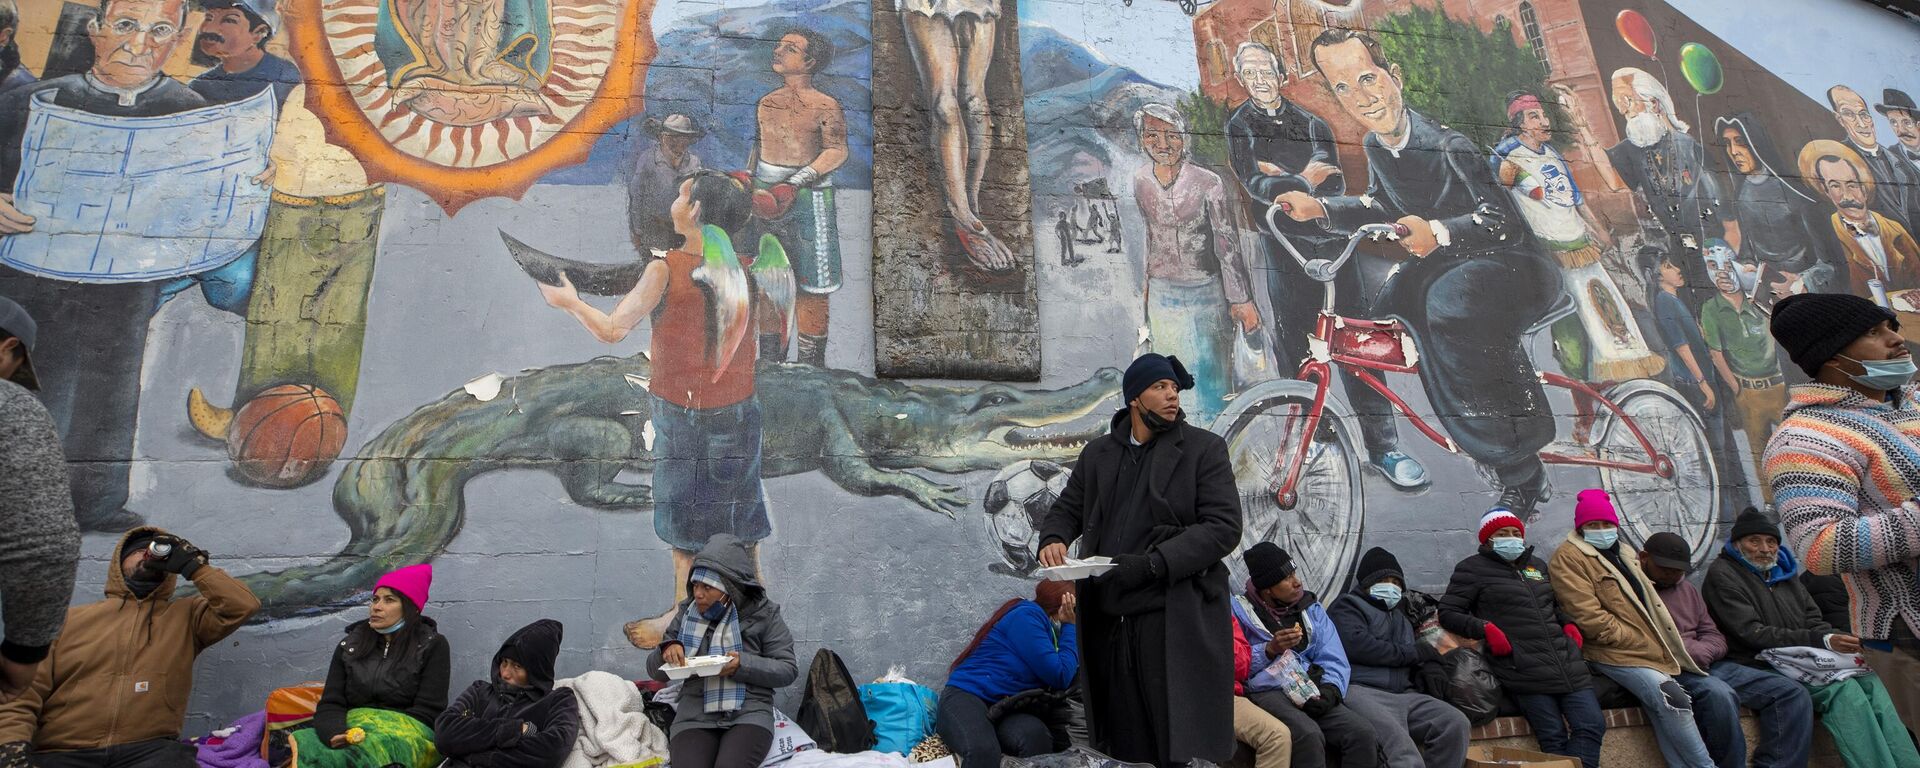 Migrantes comen y esperan ayuda mientras acampan en una calle del centro de El Paso, Texas, el domingo 18 de diciembre de 2022.   - Sputnik Mundo, 1920, 05.01.2023